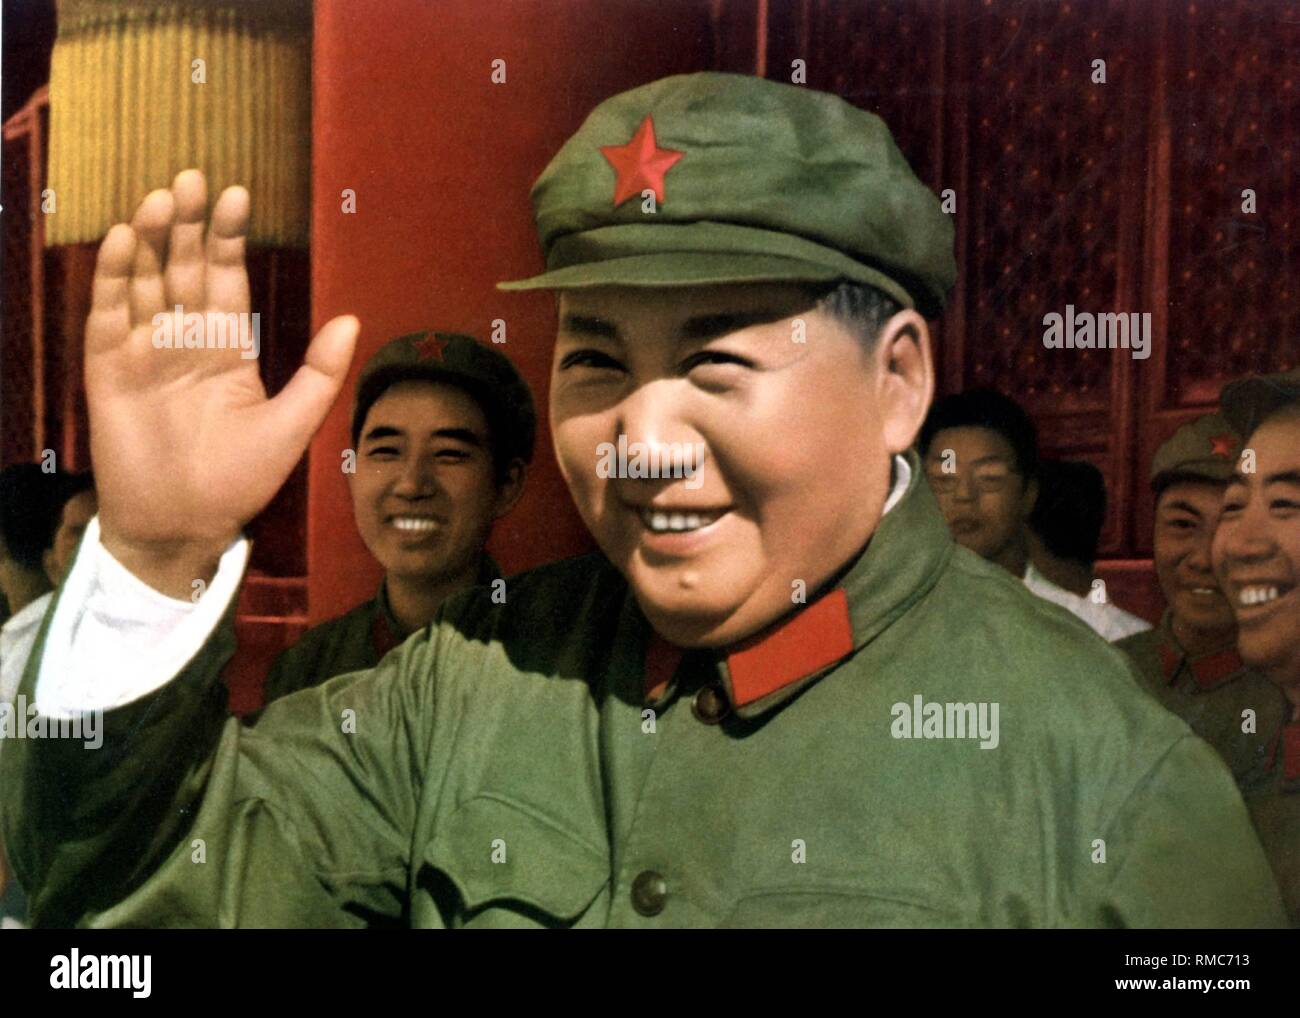 Mao Zedong - (* 26.12.1893 - 09.09.1976), zwischen 1935 - 1976 Vorsitzende der Chinesischen Kommunistischen Partei. Zwische 1954 - 1959 war er Präsident der Volksrepublik China. Chinesische Propaganda Poster der "Große Führer" Mao Zedong von 1966, undatiert. Stockfoto